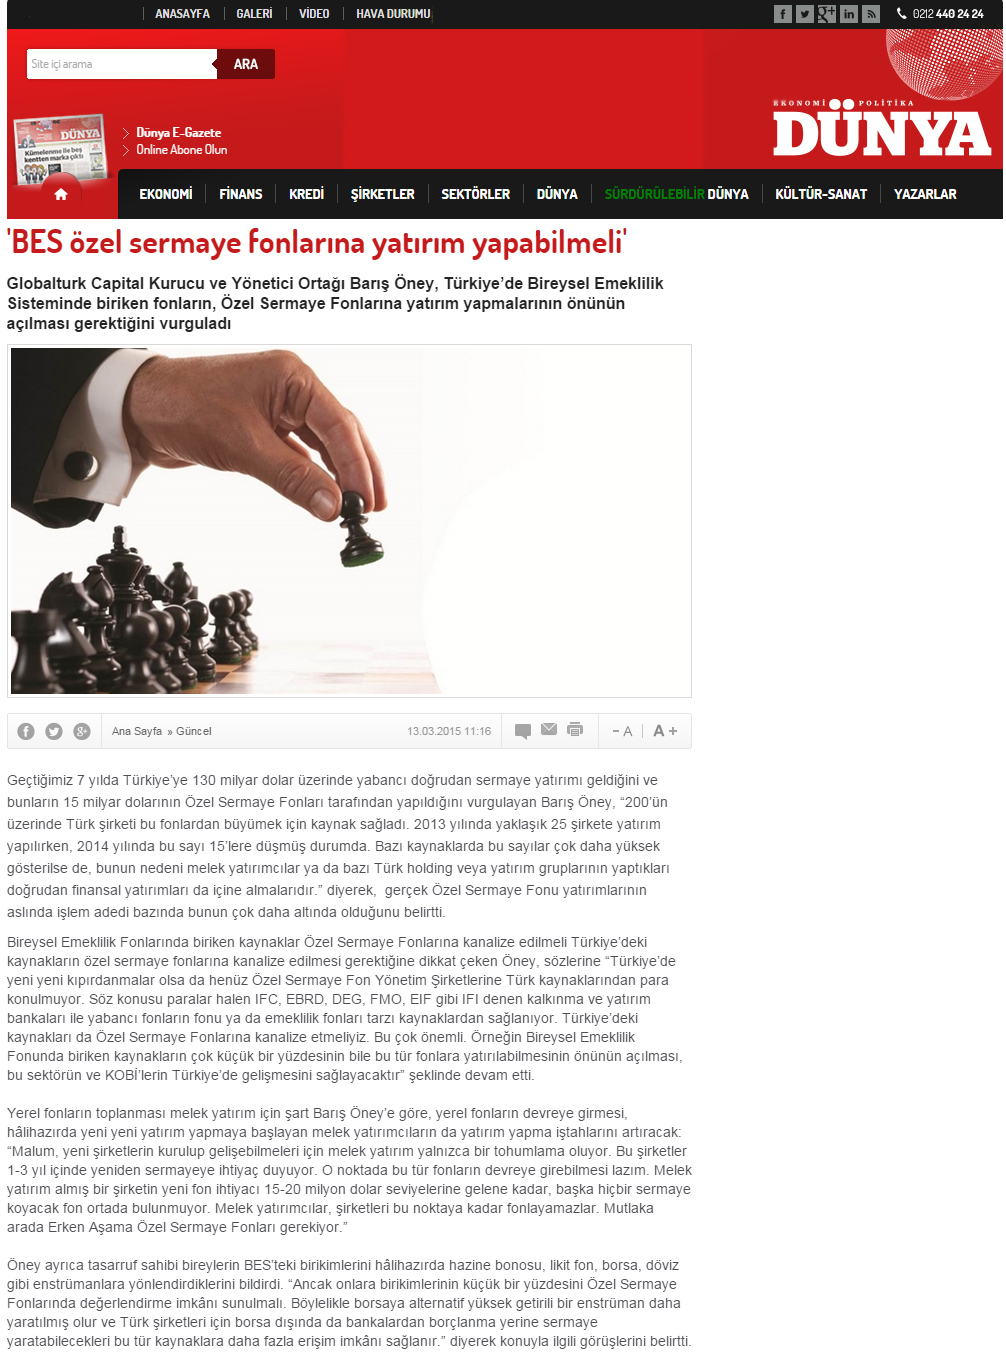 BES Özel Sermaye Fonlarına Yatırım Yapabilmeli | Dunya.com